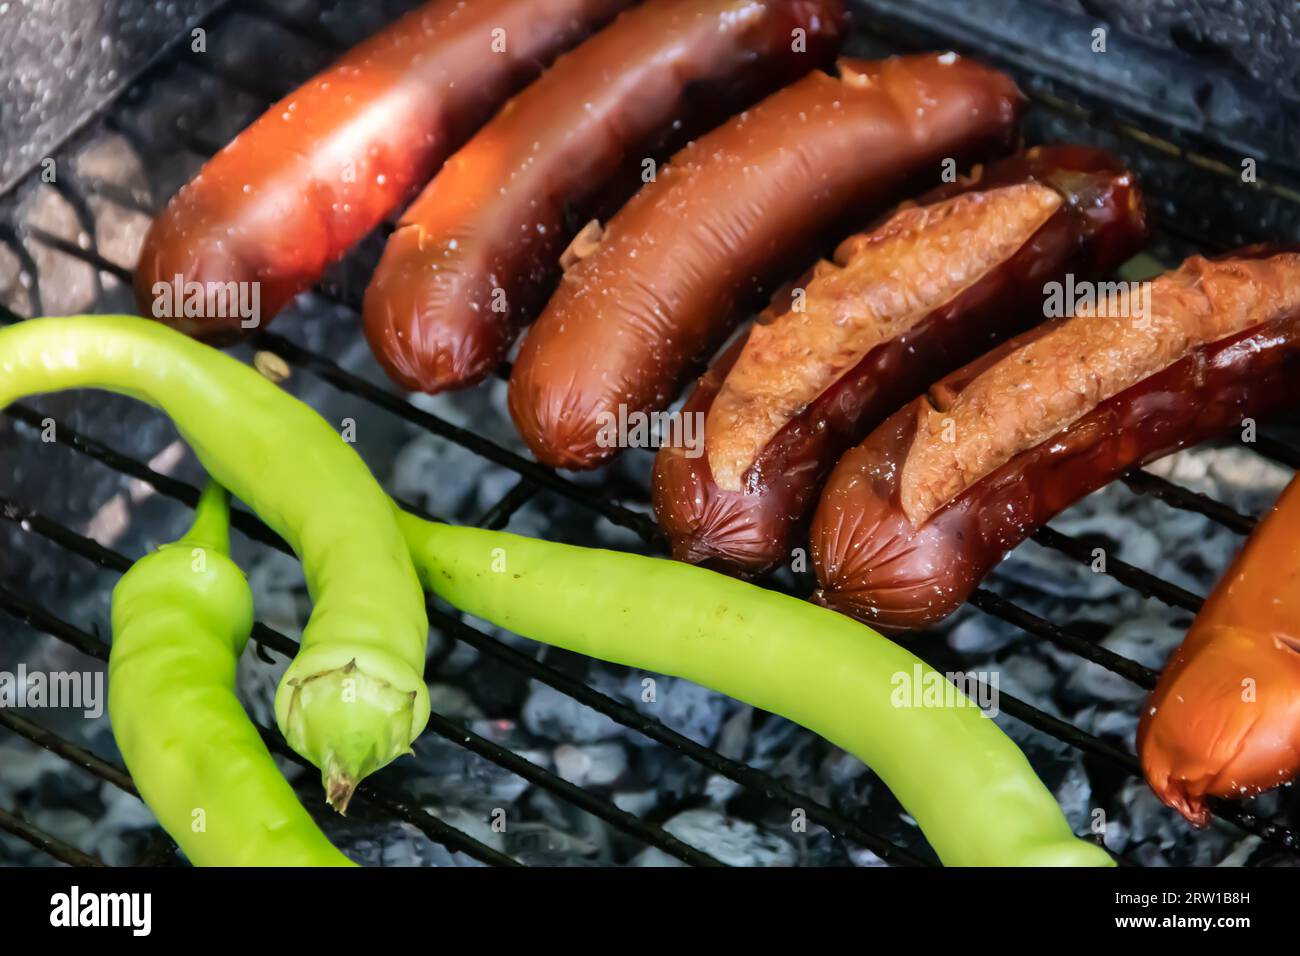 Barbecue au charbon barbecue Grill dans l'arrière-cour de Country Side, préparer, griller des saucisses et des poivrons verts sur le gril avec clôture en bois en arrière-plan Banque D'Images